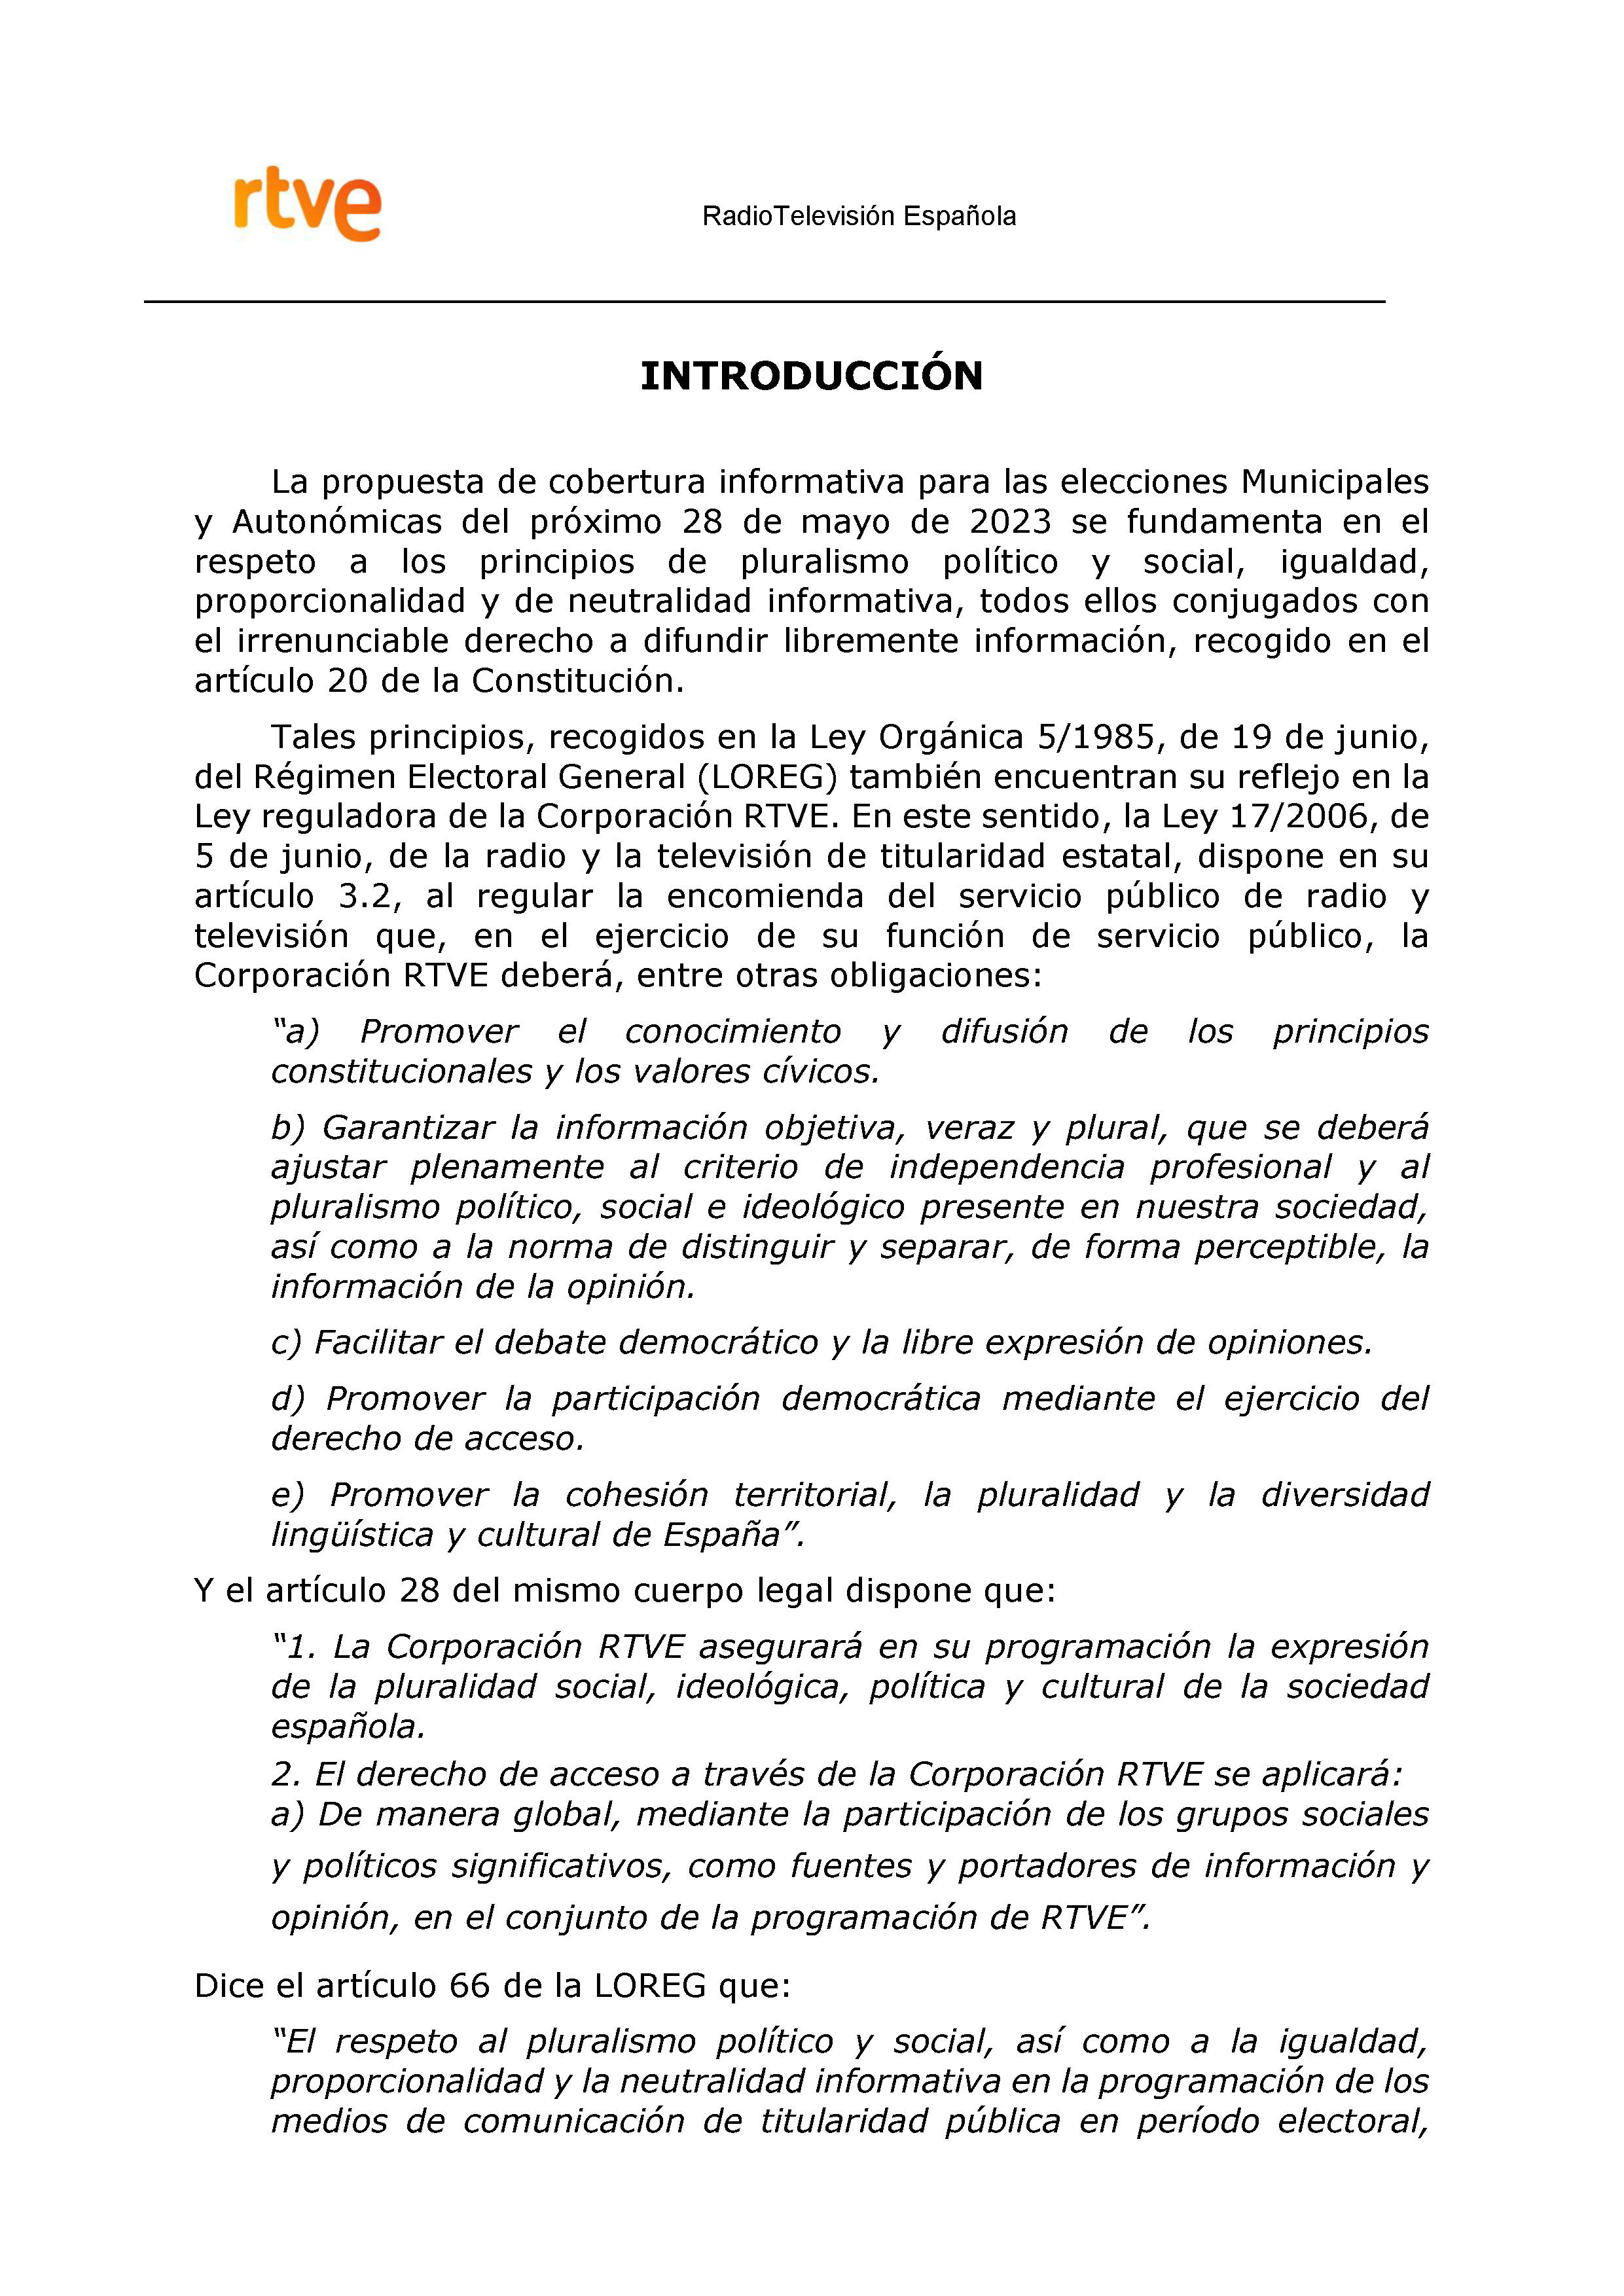 PLAN DE COBERTURA INFORMATIVA RTVE en Extremadura ELECCIONES MUNICIPALES Y AUTONÓMICAS Pag 2